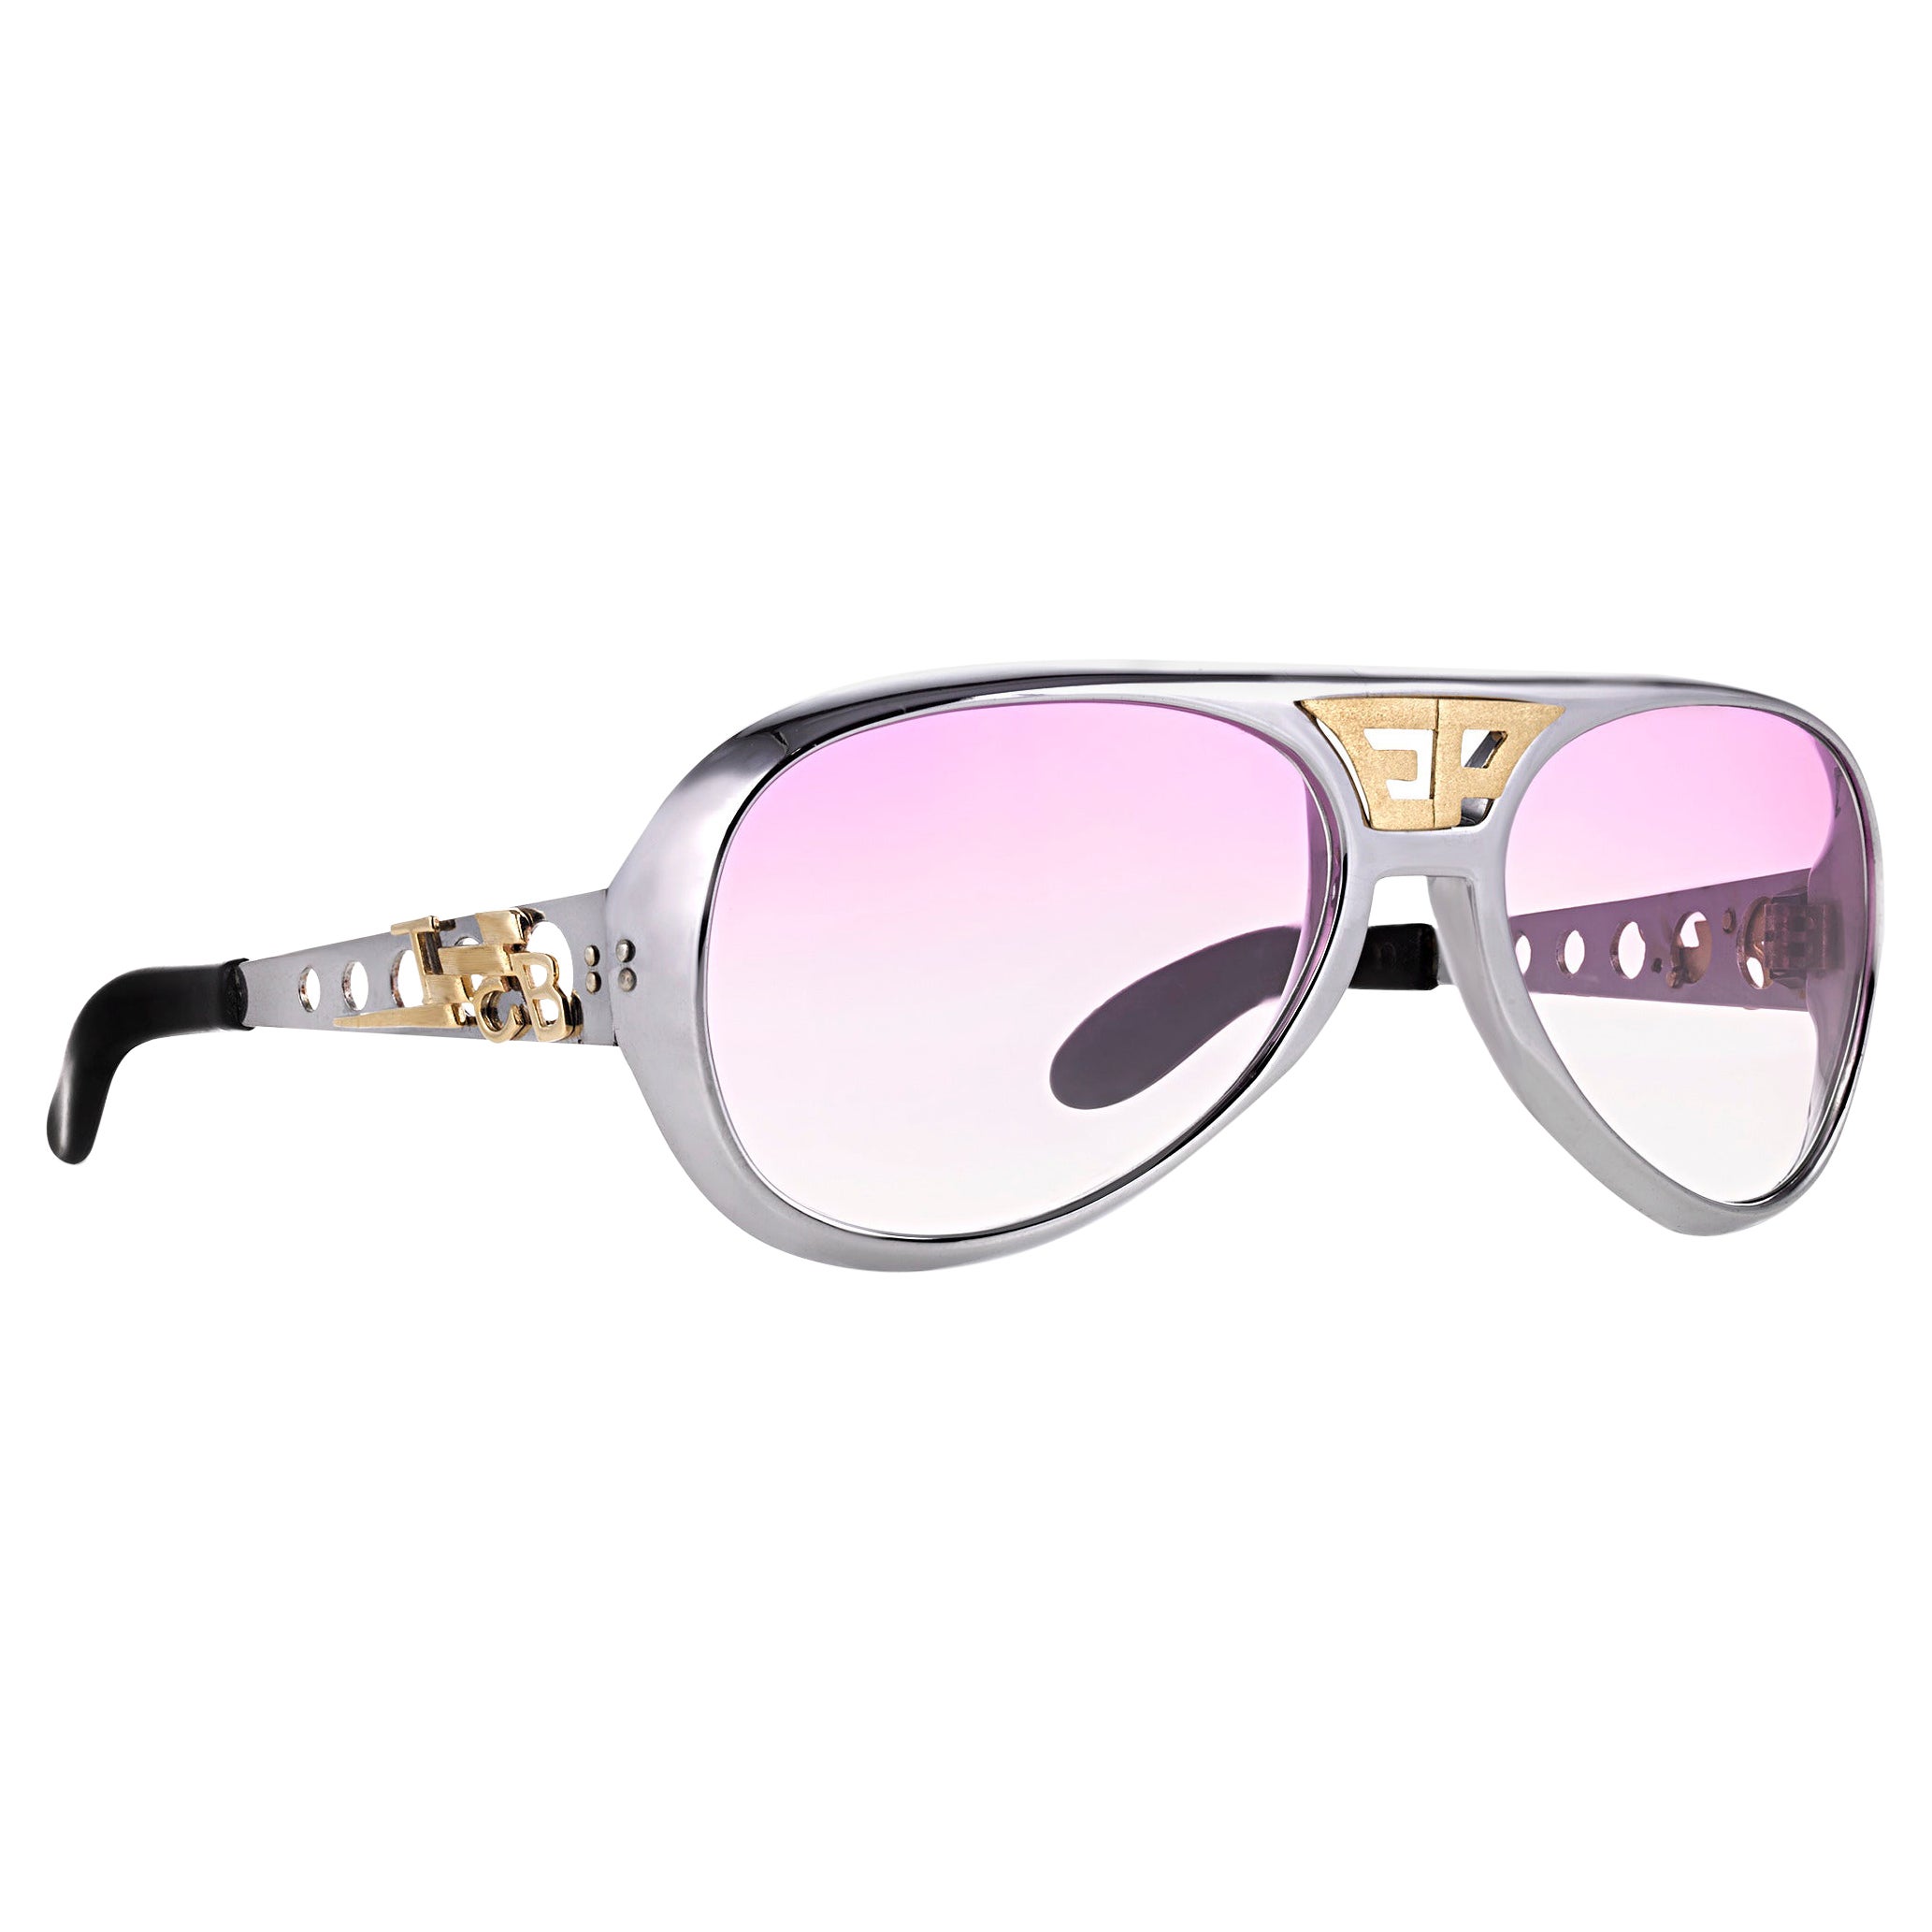 Elvis' Monogrammed Sunglasses